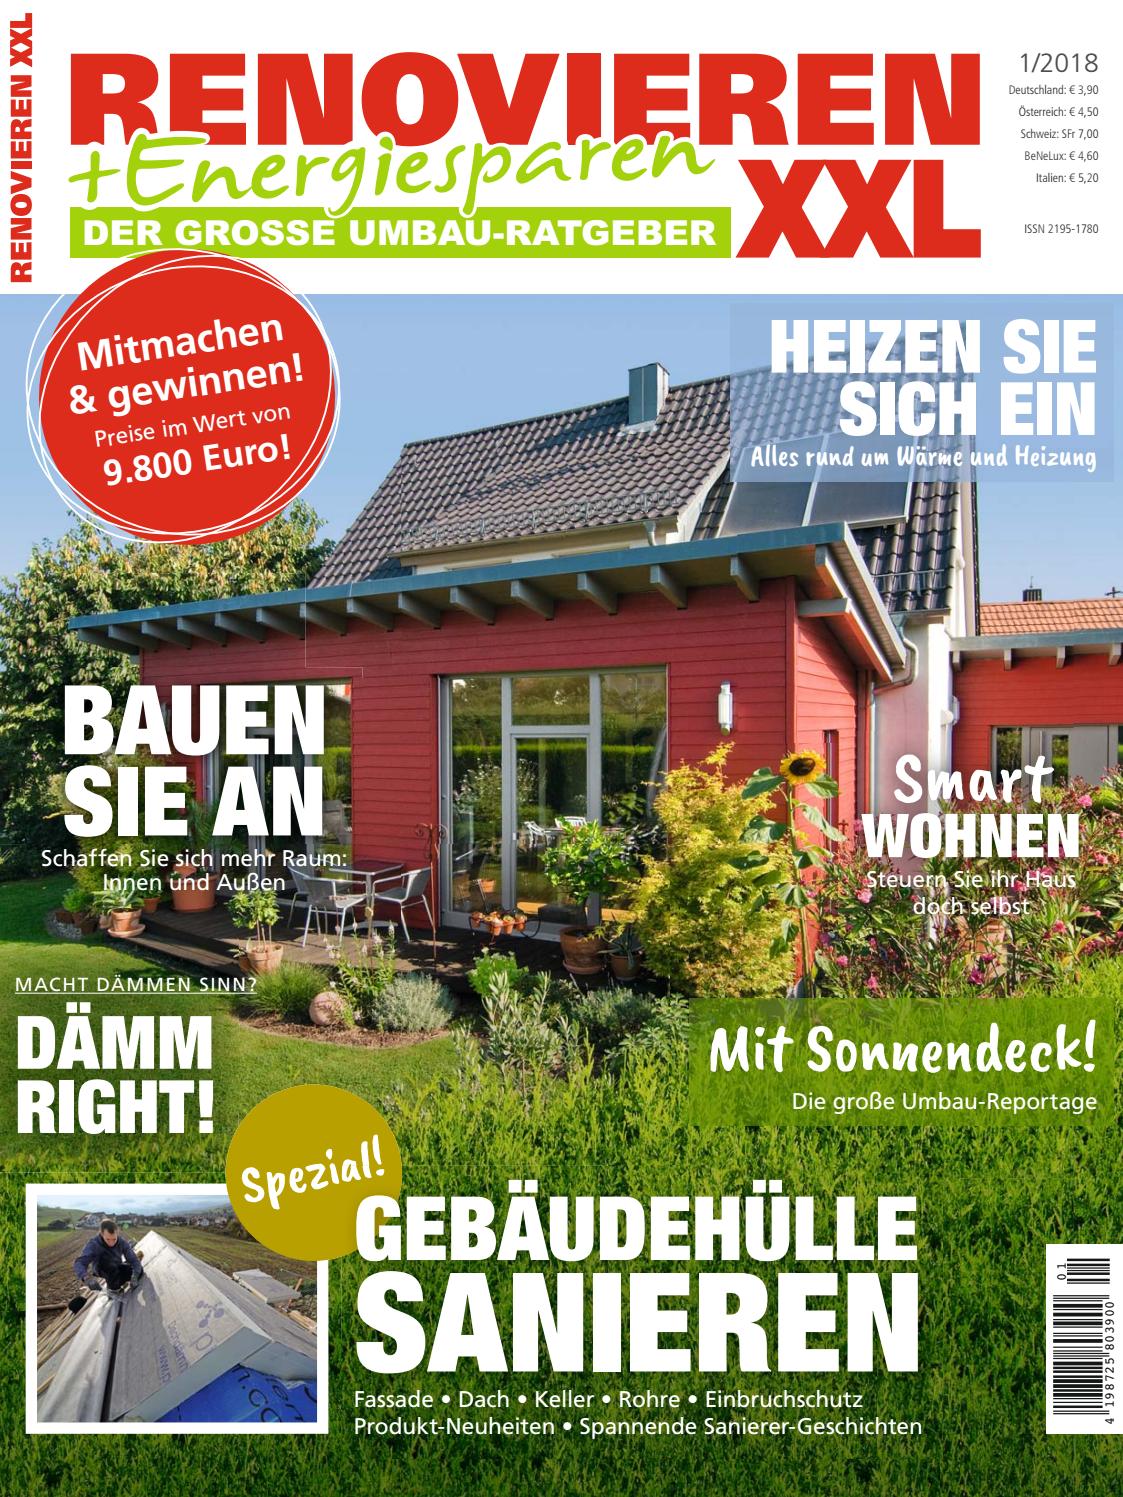 Garten Mit Alten Sachen Dekorieren Schön Renovieren & Energiesparen 1 2018 by Family Home Verlag Gmbh